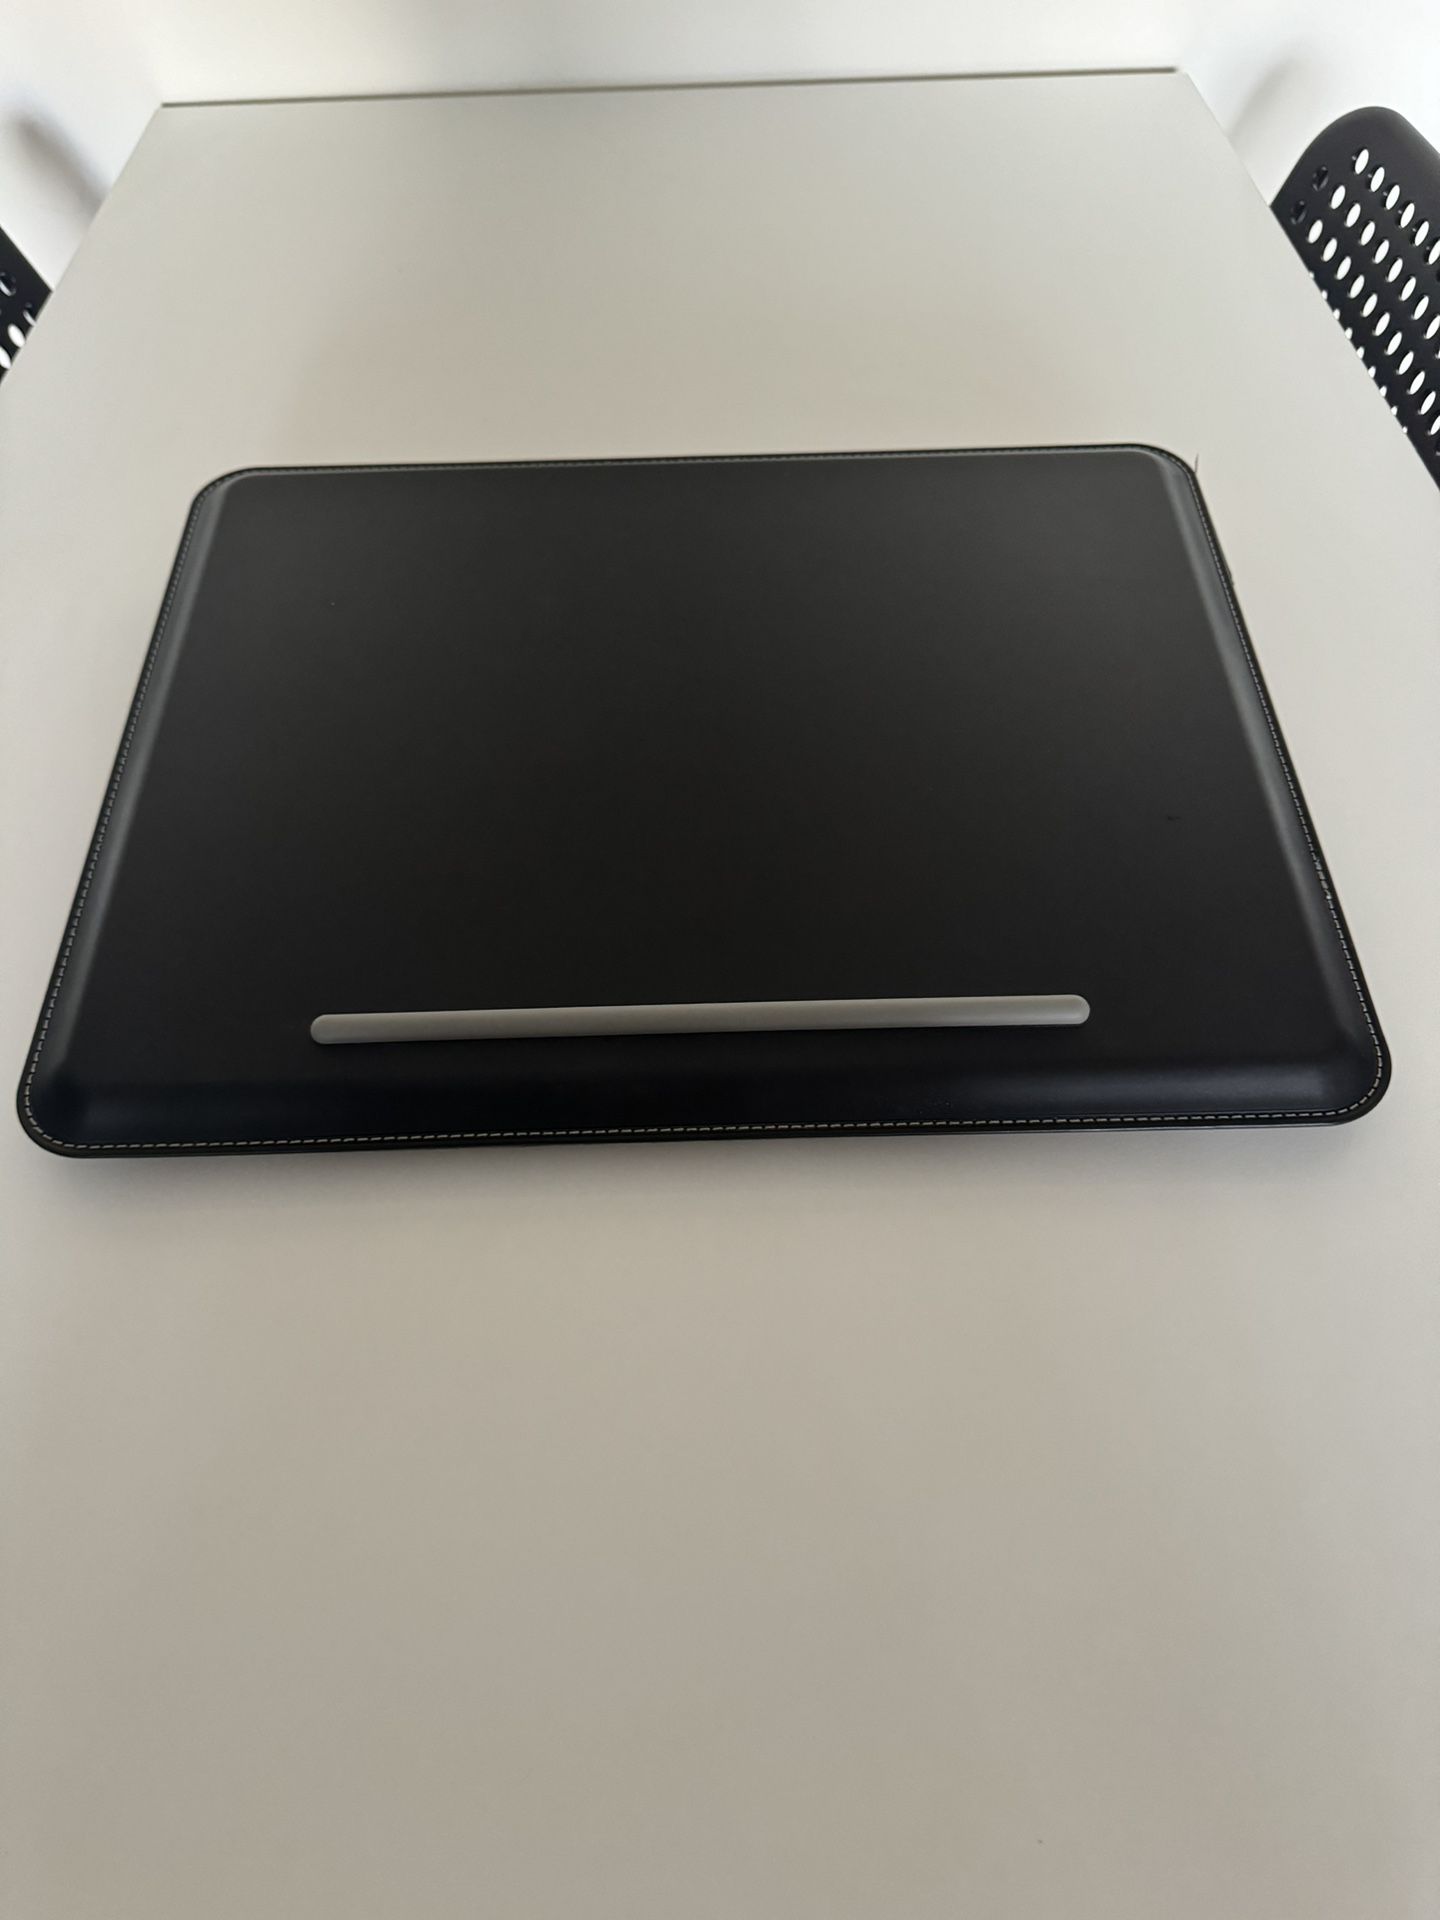 Belkin Laptop Pad